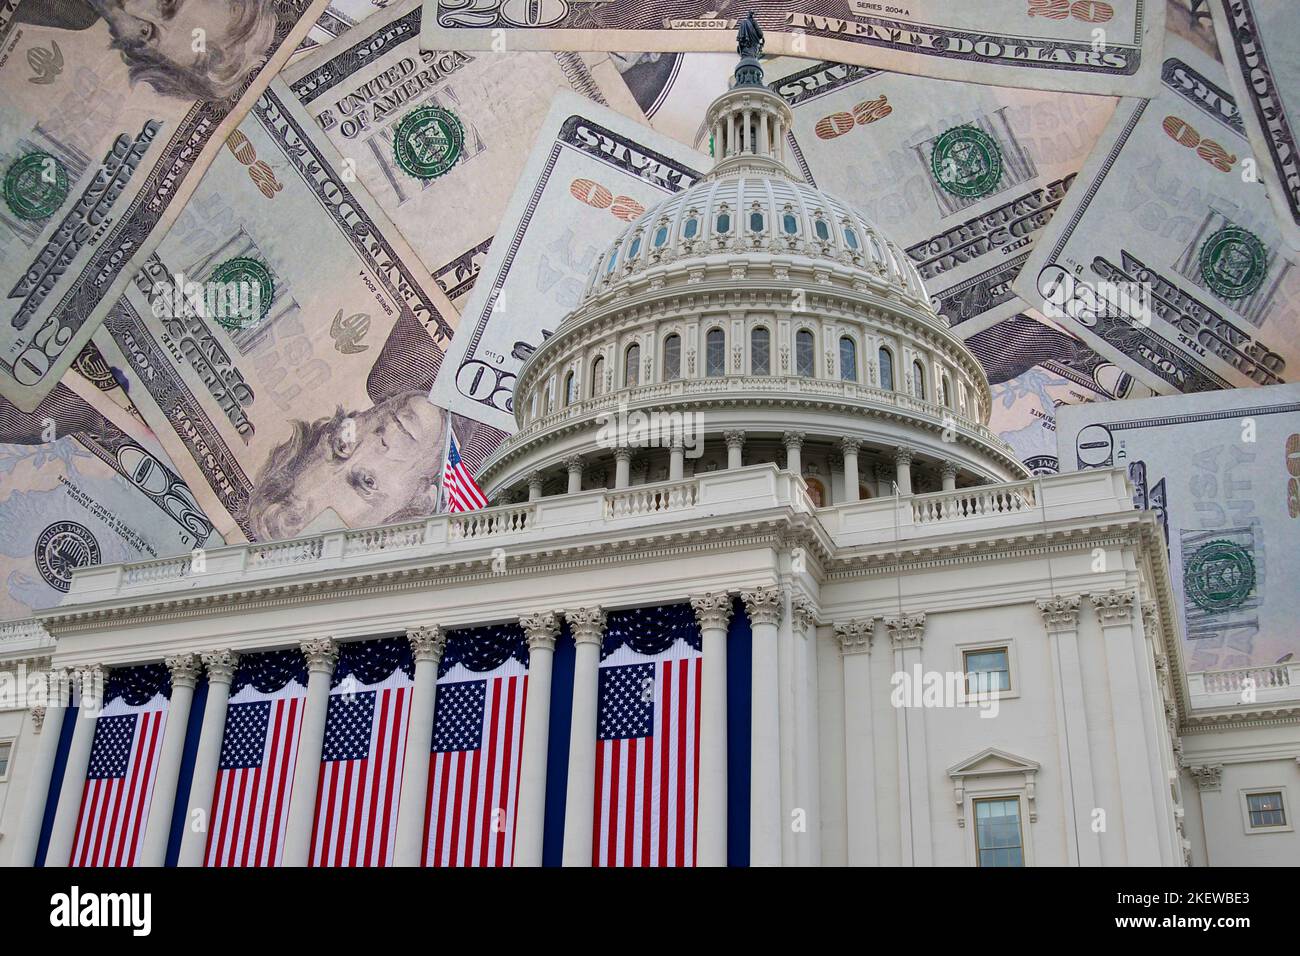 Das Kapitolgebäude der Vereinigten Staaten von Amerika in Washington D.C., das mit amerikanischen Flaggen geschmückt ist, wird über Dollarscheinen überlagert dargestellt. Stockfoto